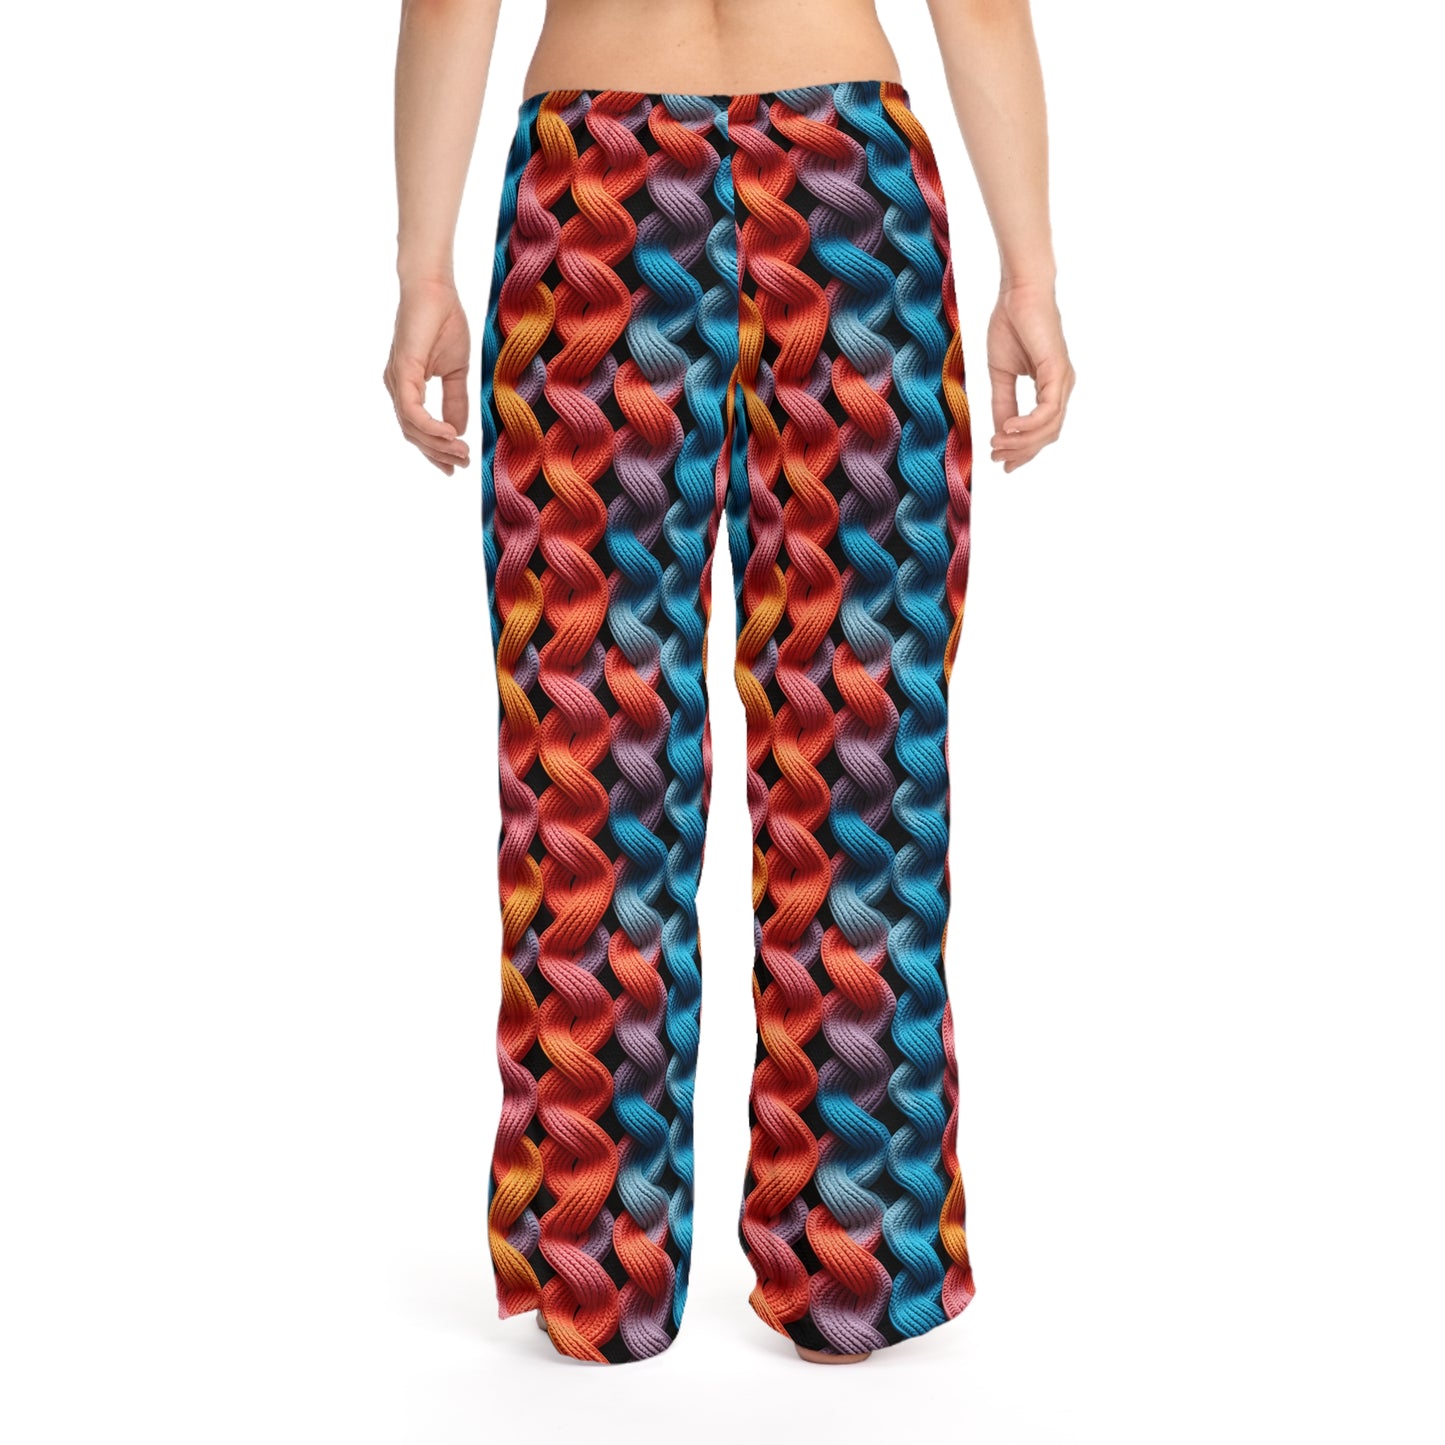 Lace Ladder Women's Pajama Pants